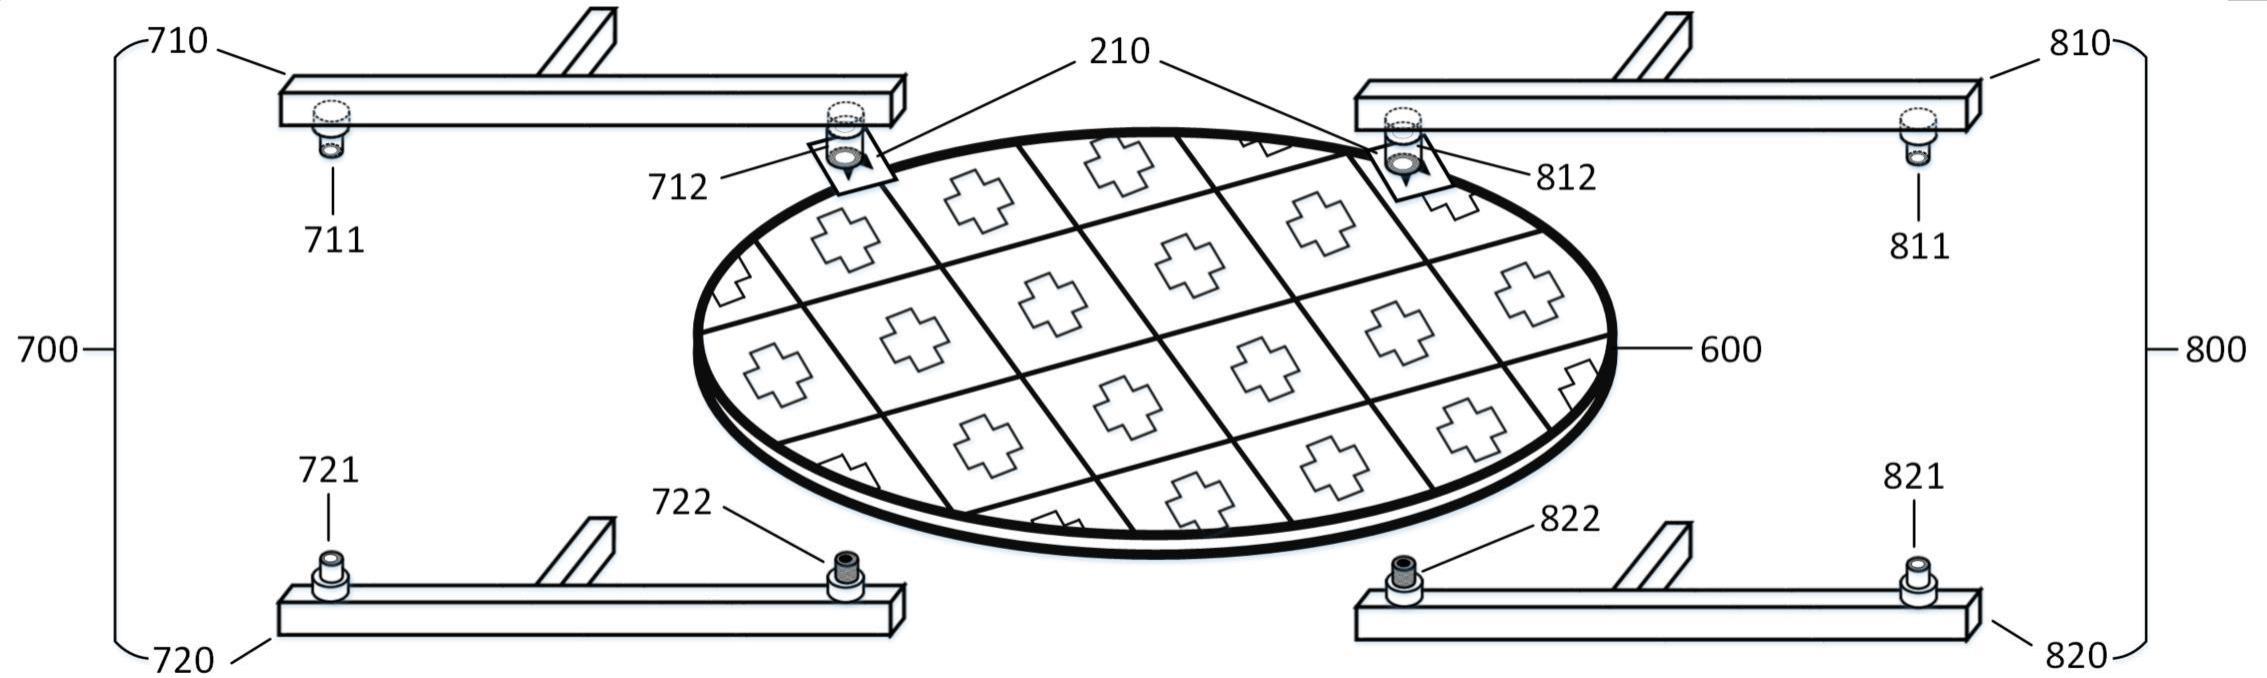 芯片键合对准装置及形成方法、晶圆键合结构及形成方法与流程